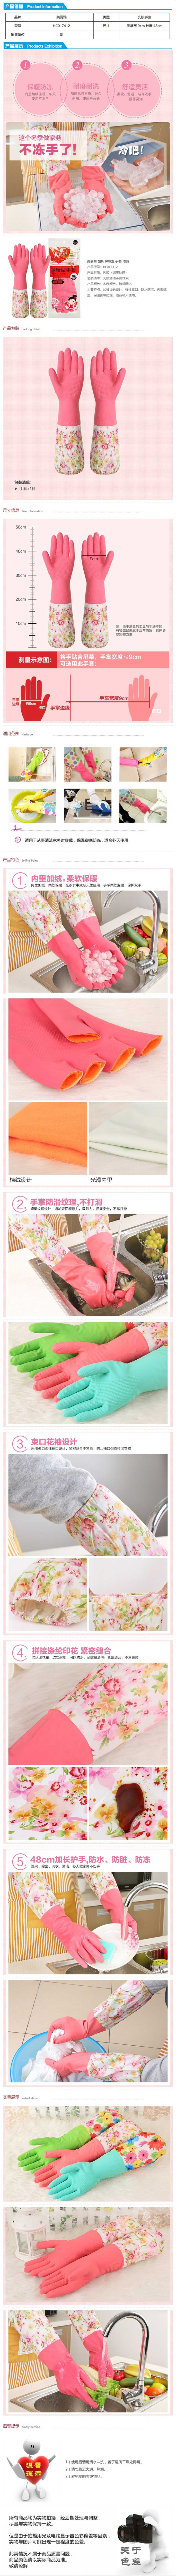 美丽雅HC017412保暖型乳胶手套